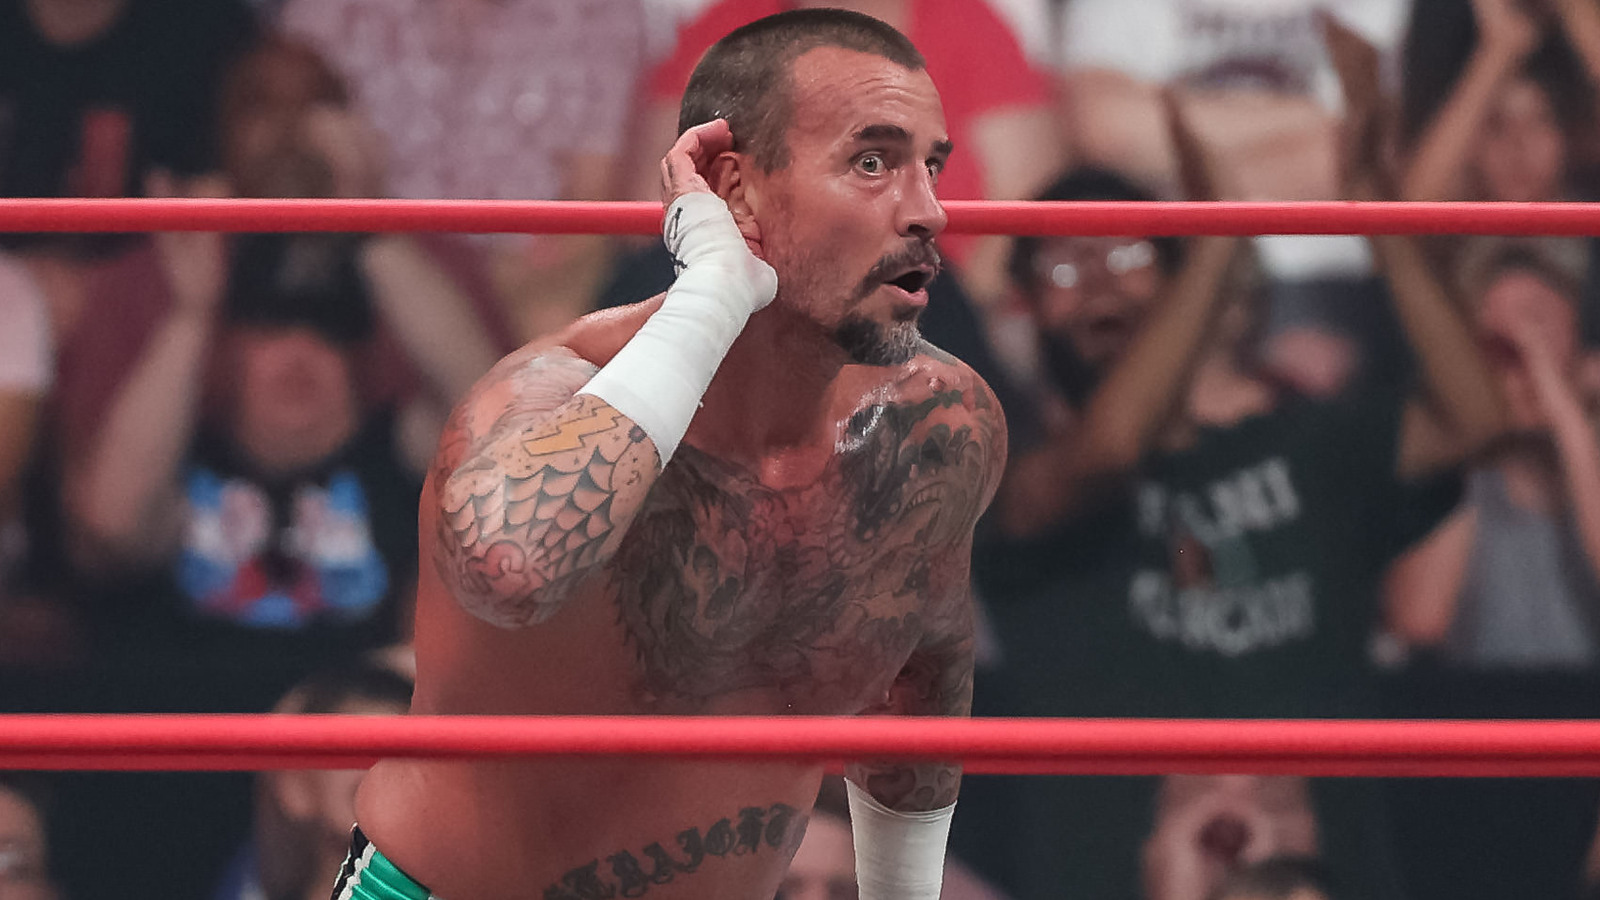 Charla entre bastidores sobre AEW y CM Punk pinta una imagen nefasta